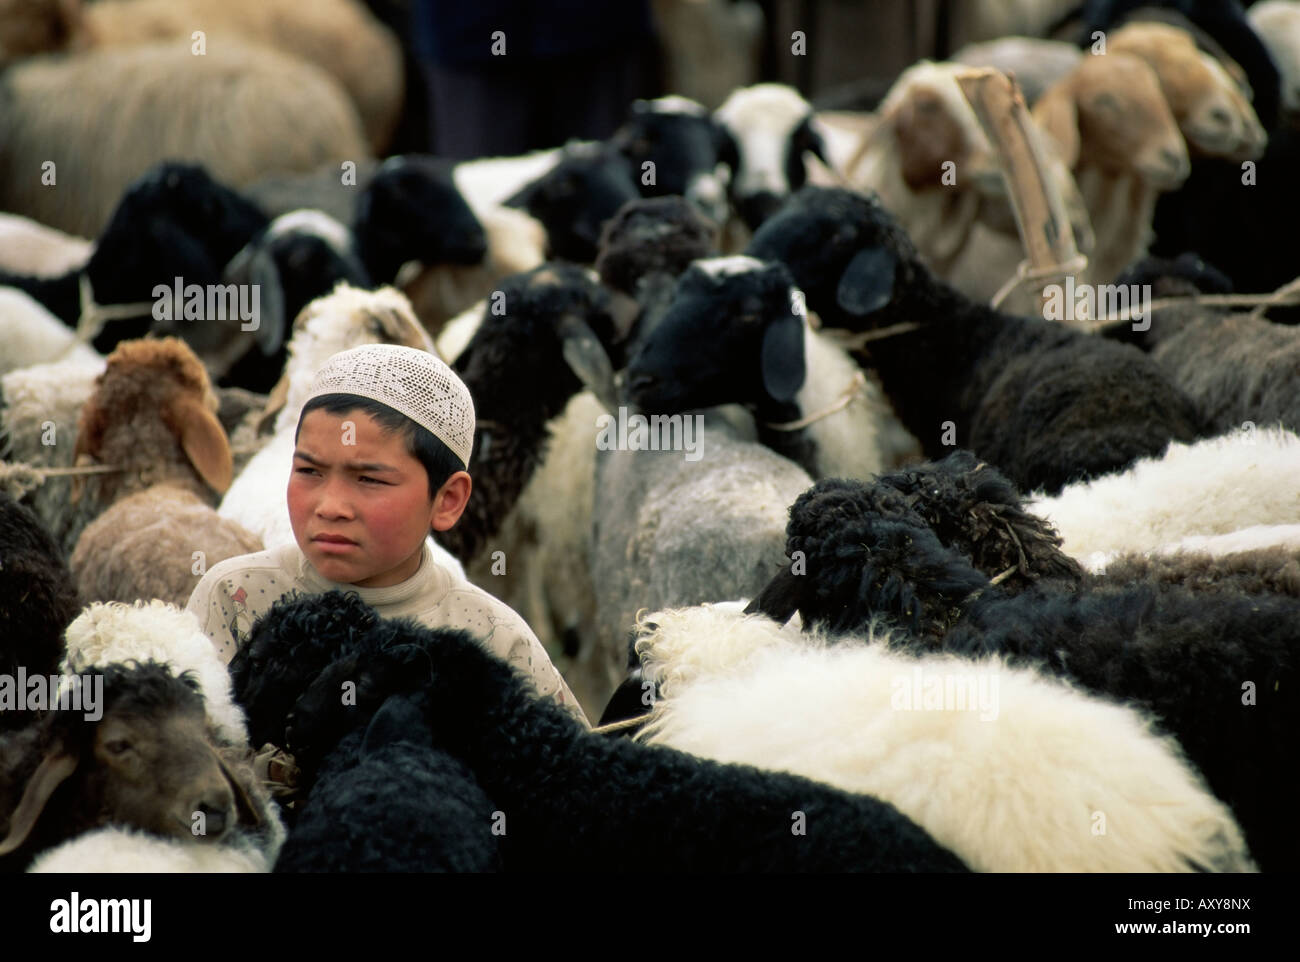 Garçon ouïgour entouré de moutons, marché du dimanche, Kashi, Xinjiang, Chine, Asie Banque D'Images